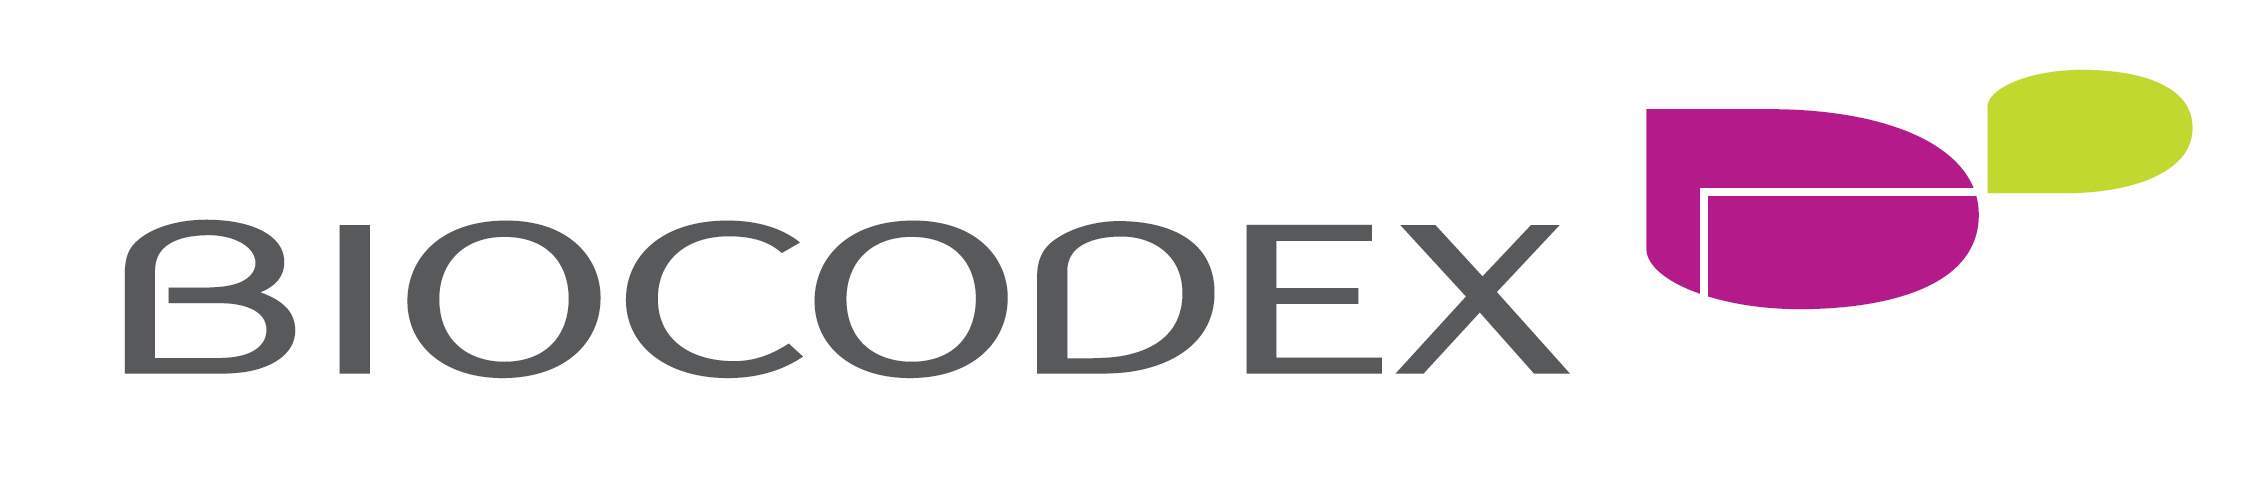 logo biocodex